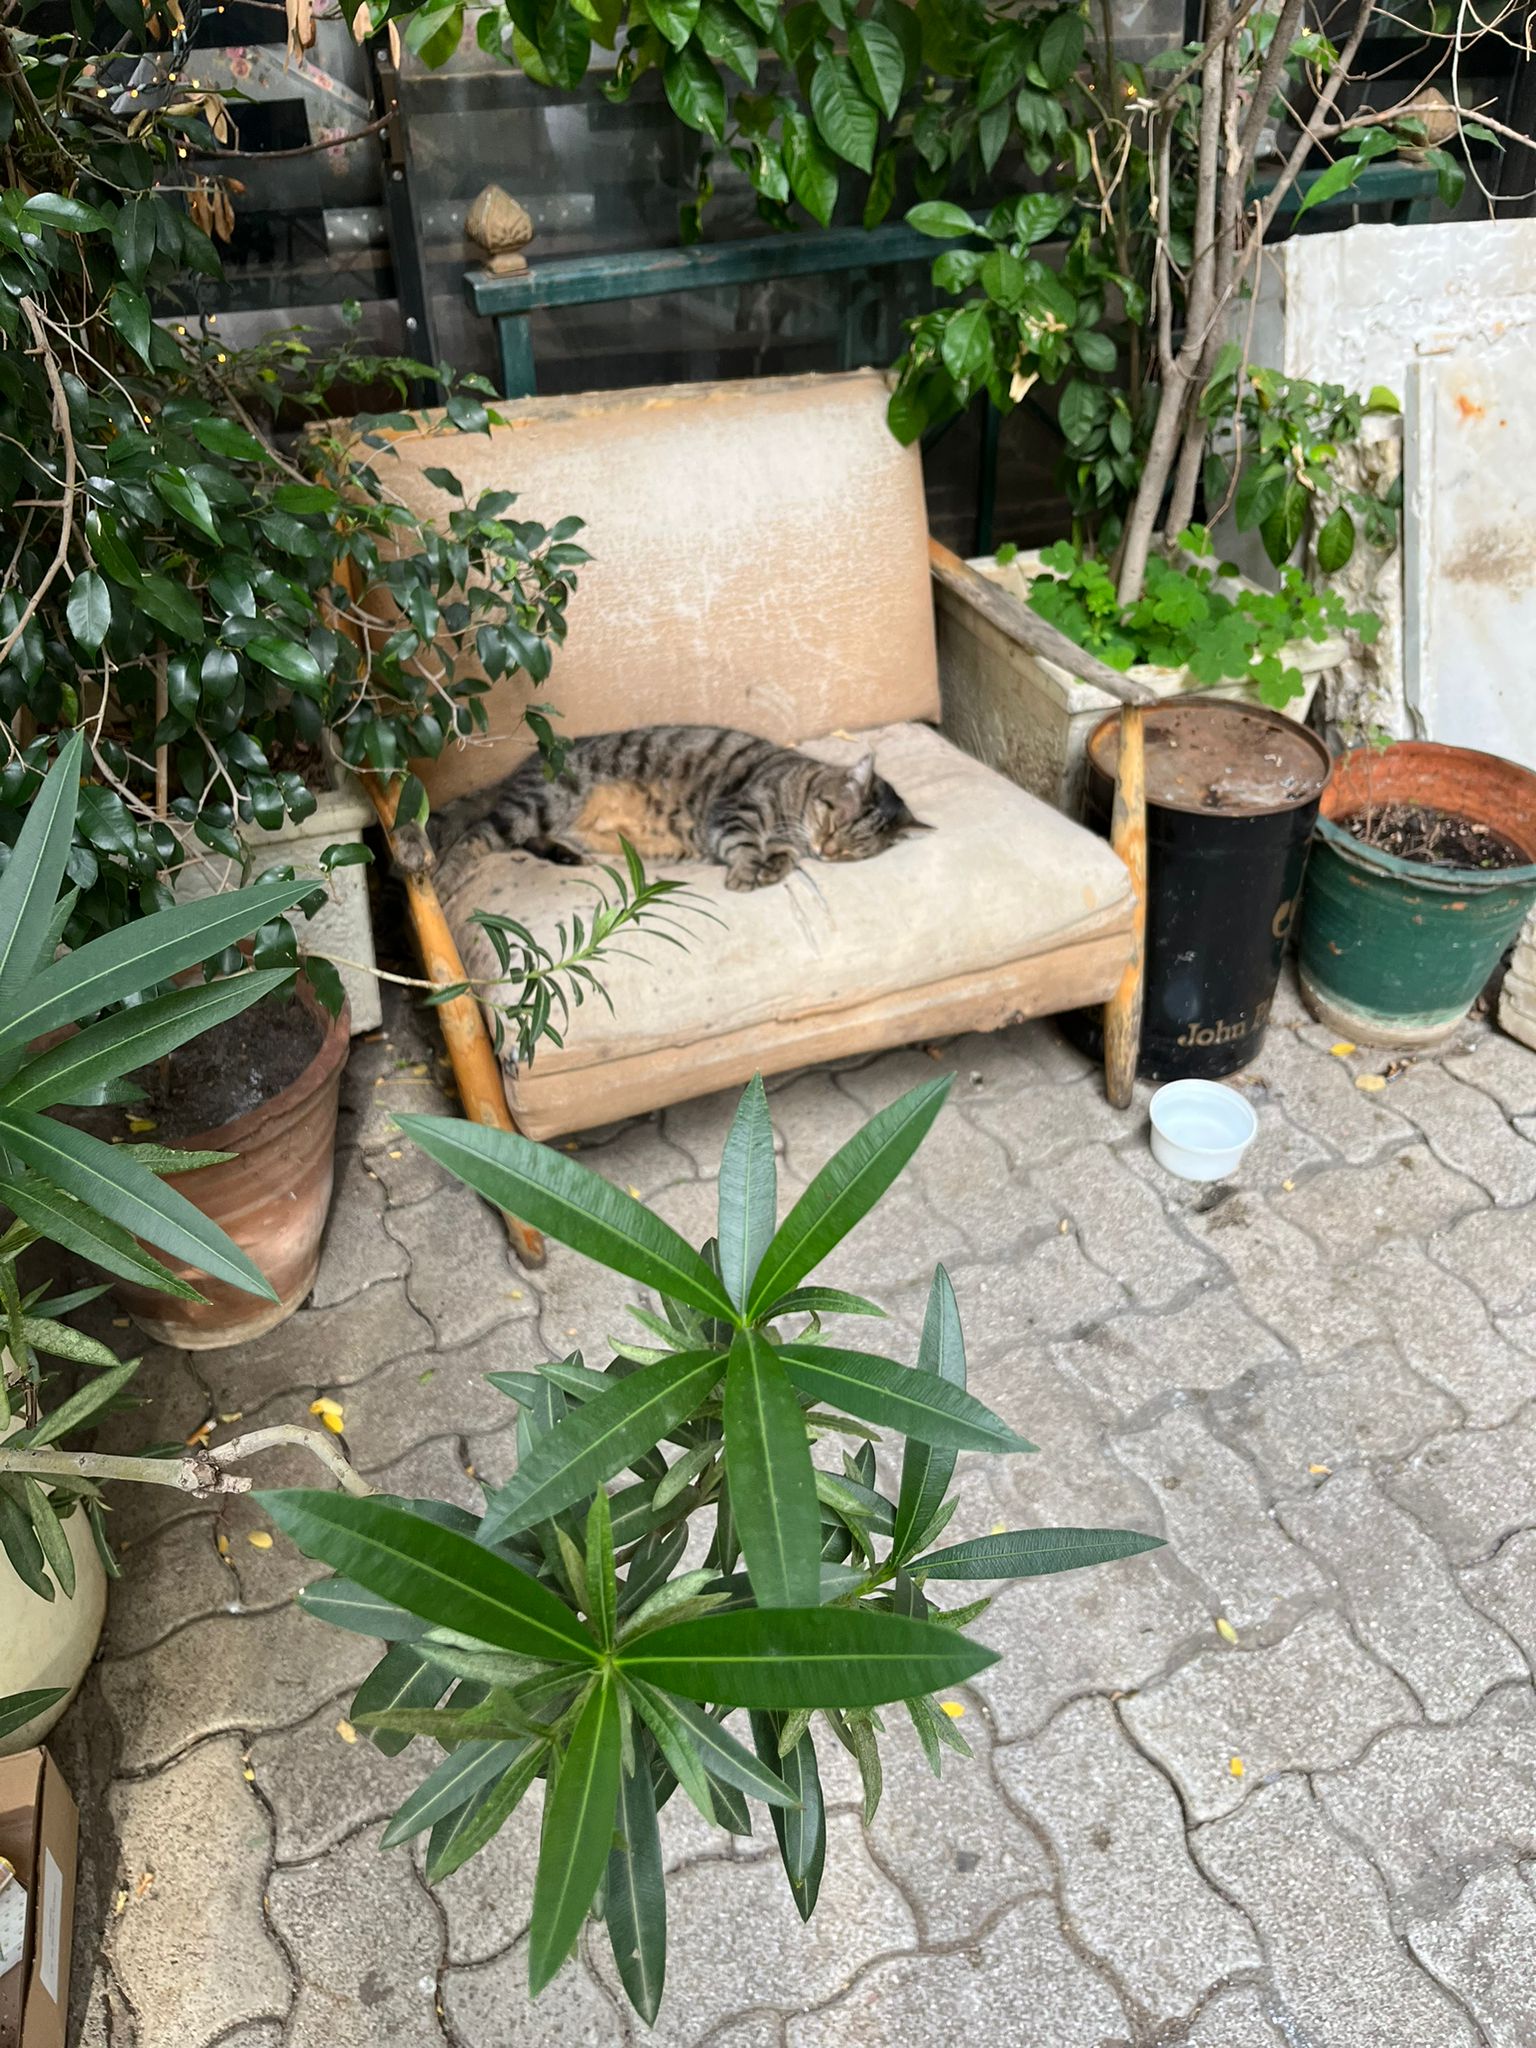 Mačka spiaca na kresle. Okolo nej sú kvetiny, rastliny a iné stromy.